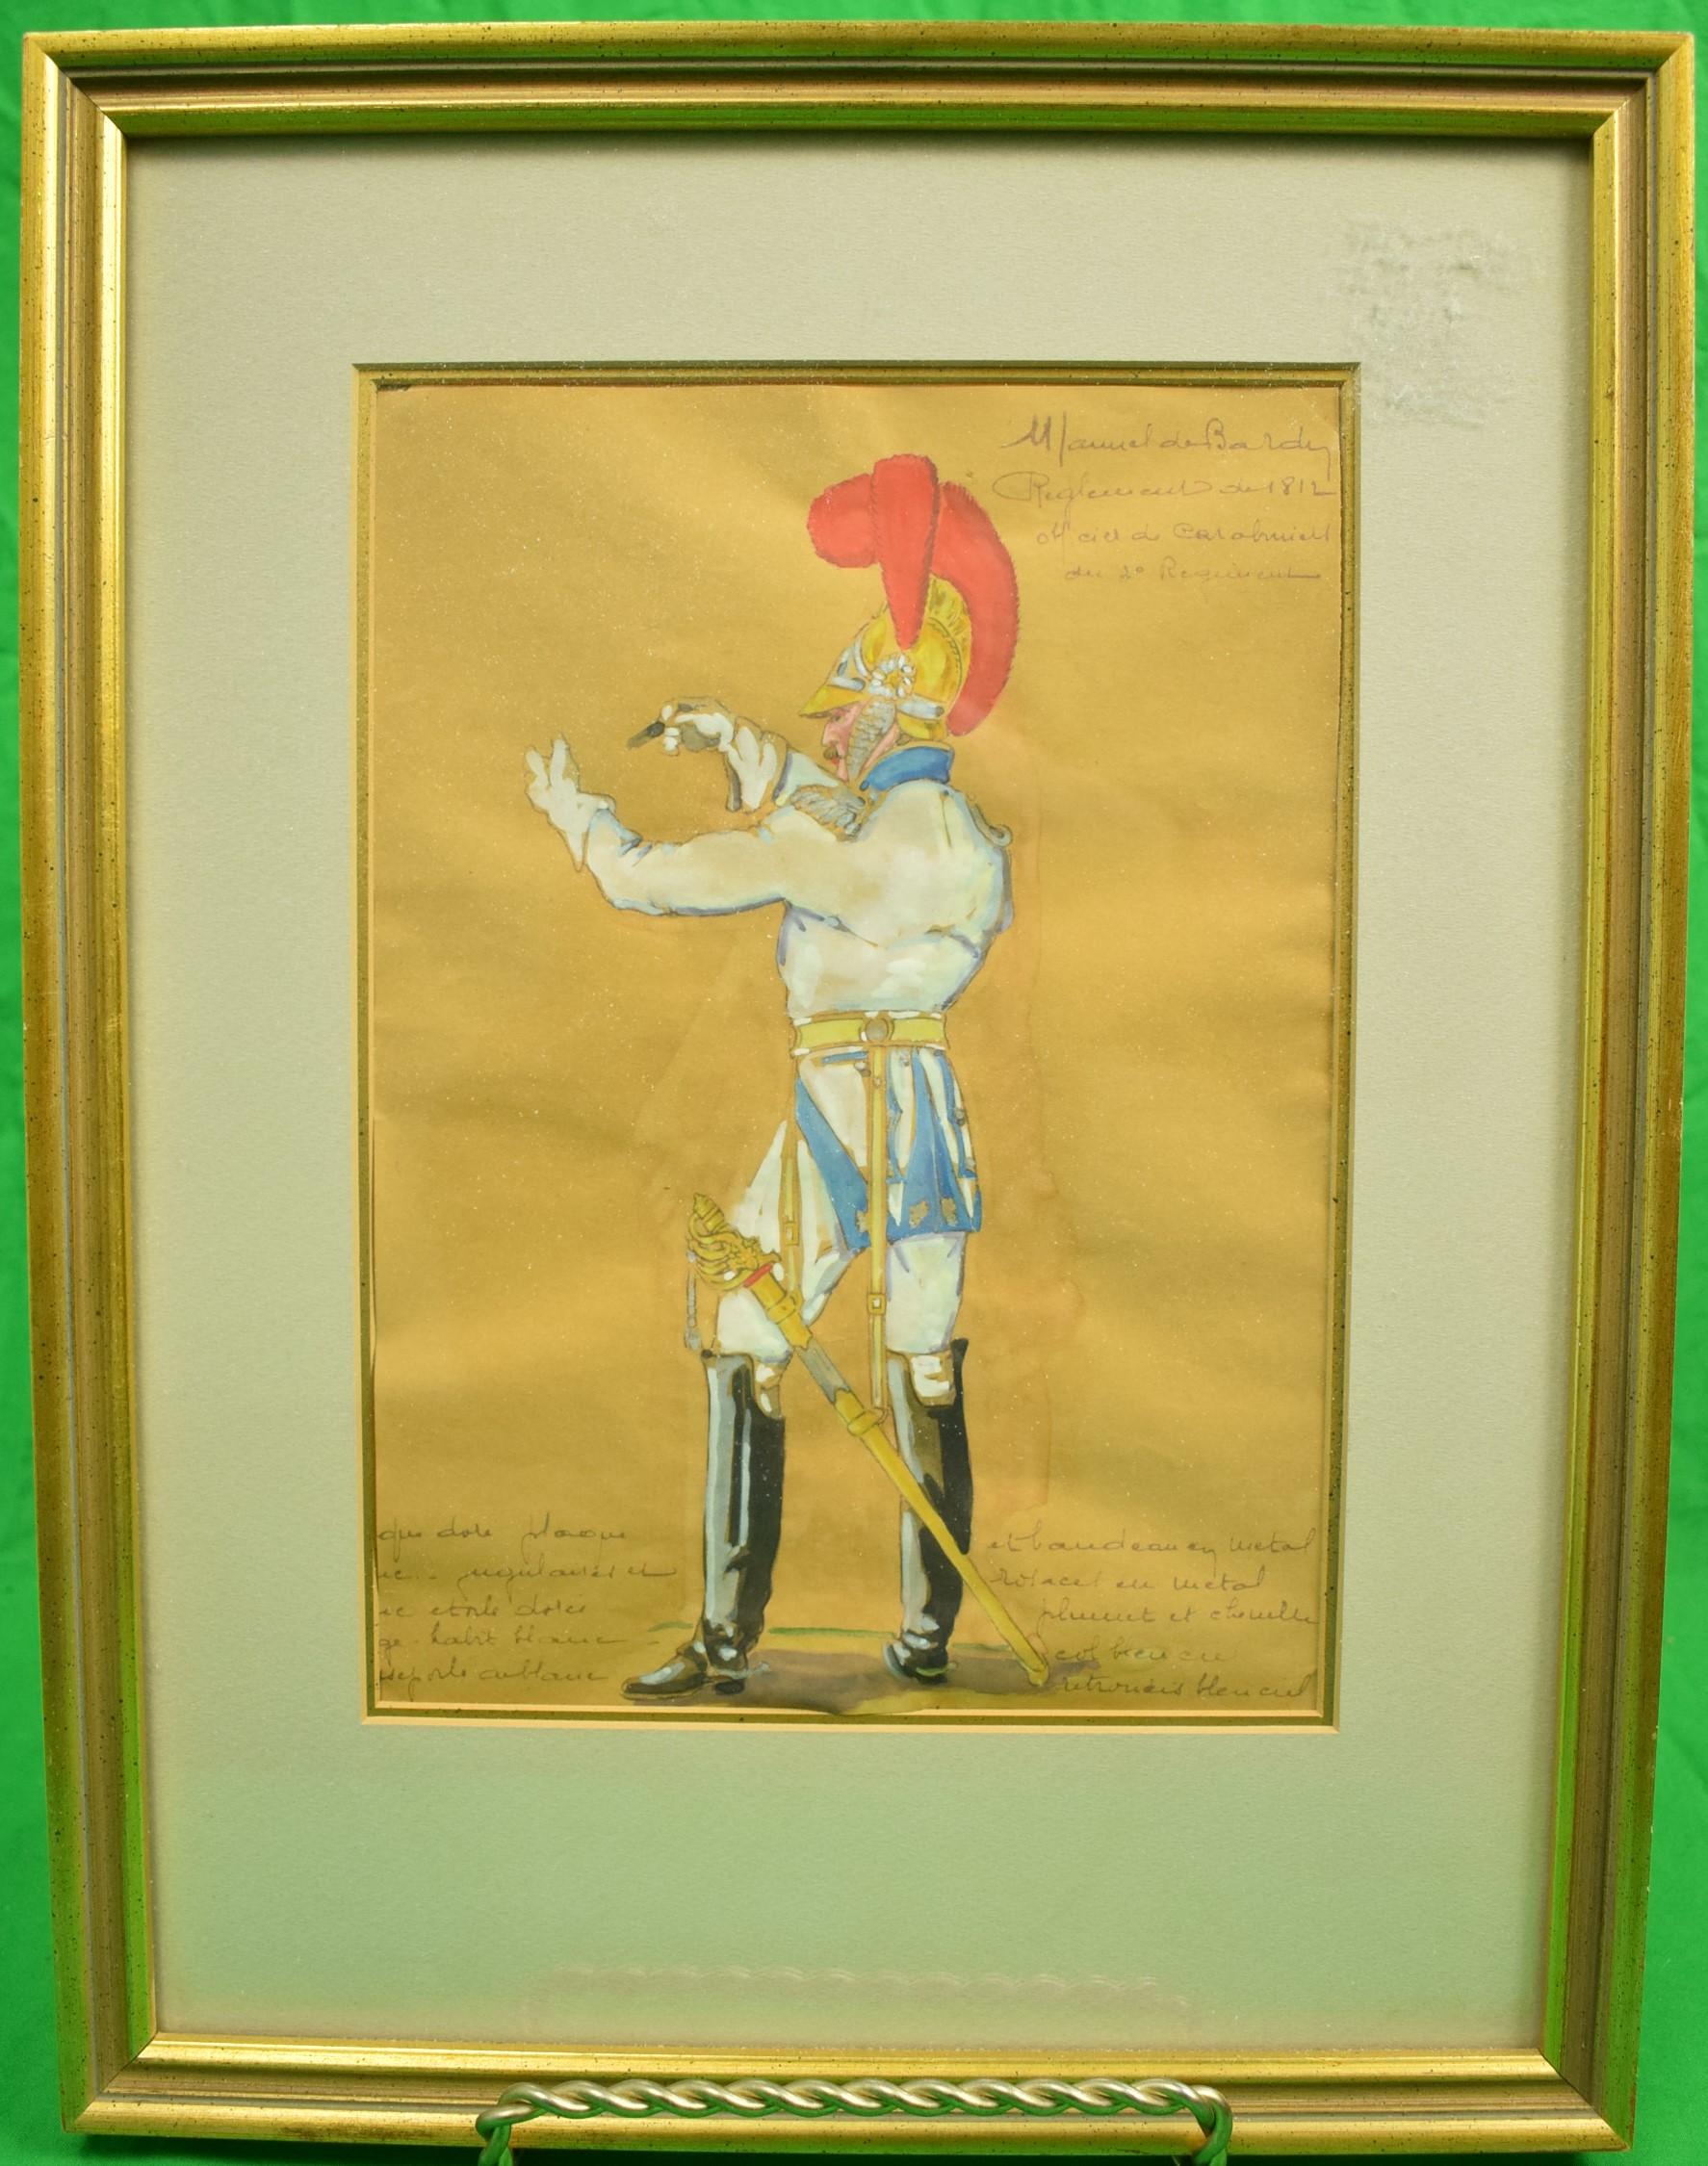 Manual de Bardin Reglement de 1812 Officier du Carobinelle du 2d Regiment - Art by Unknown